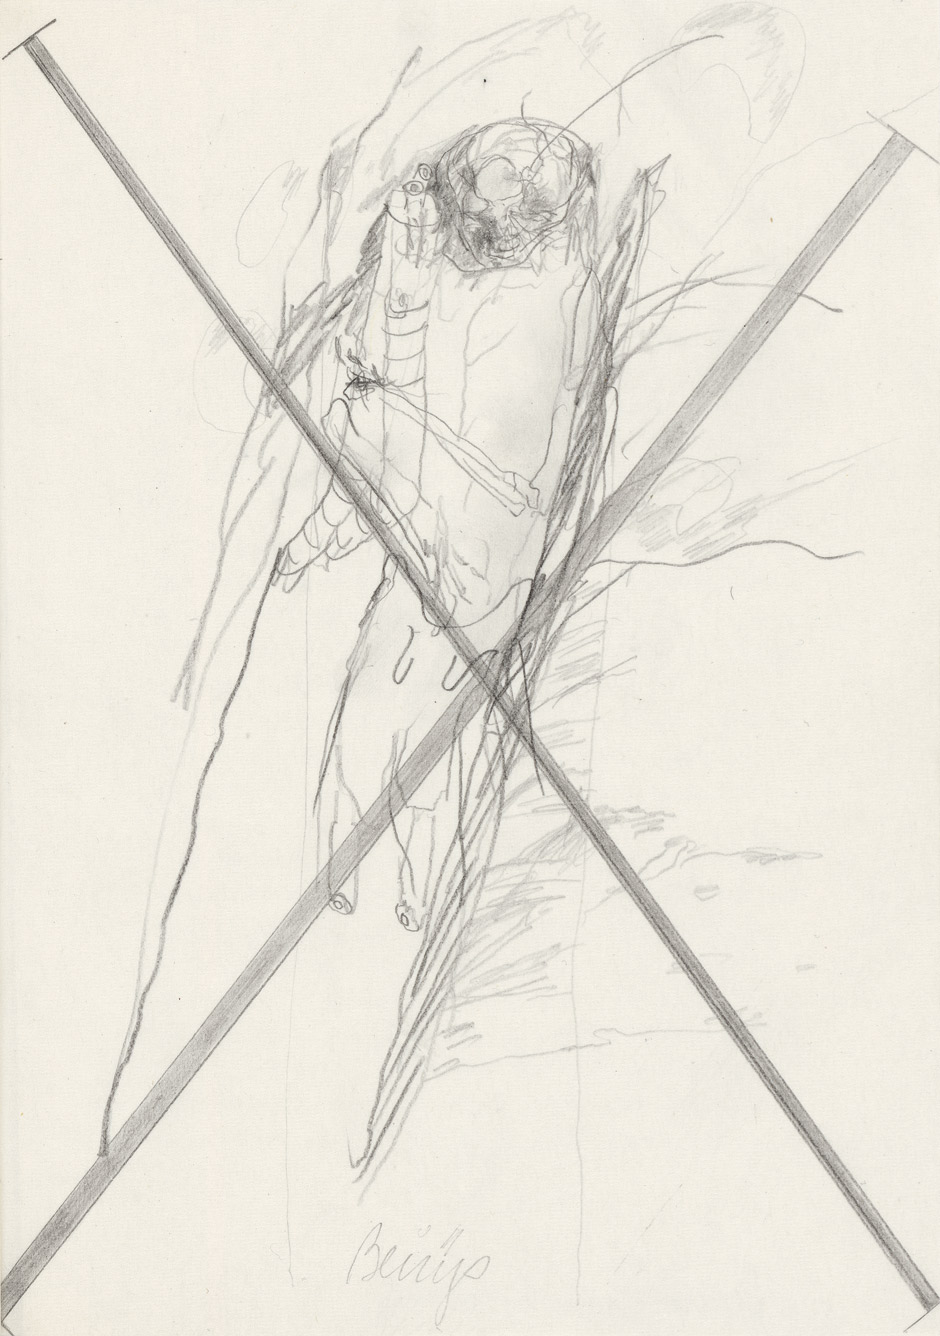 Lot 3021, Auction  115, Schaukal, Richard und Beuys, Joseph - Illustr., Von Tod zu Tod